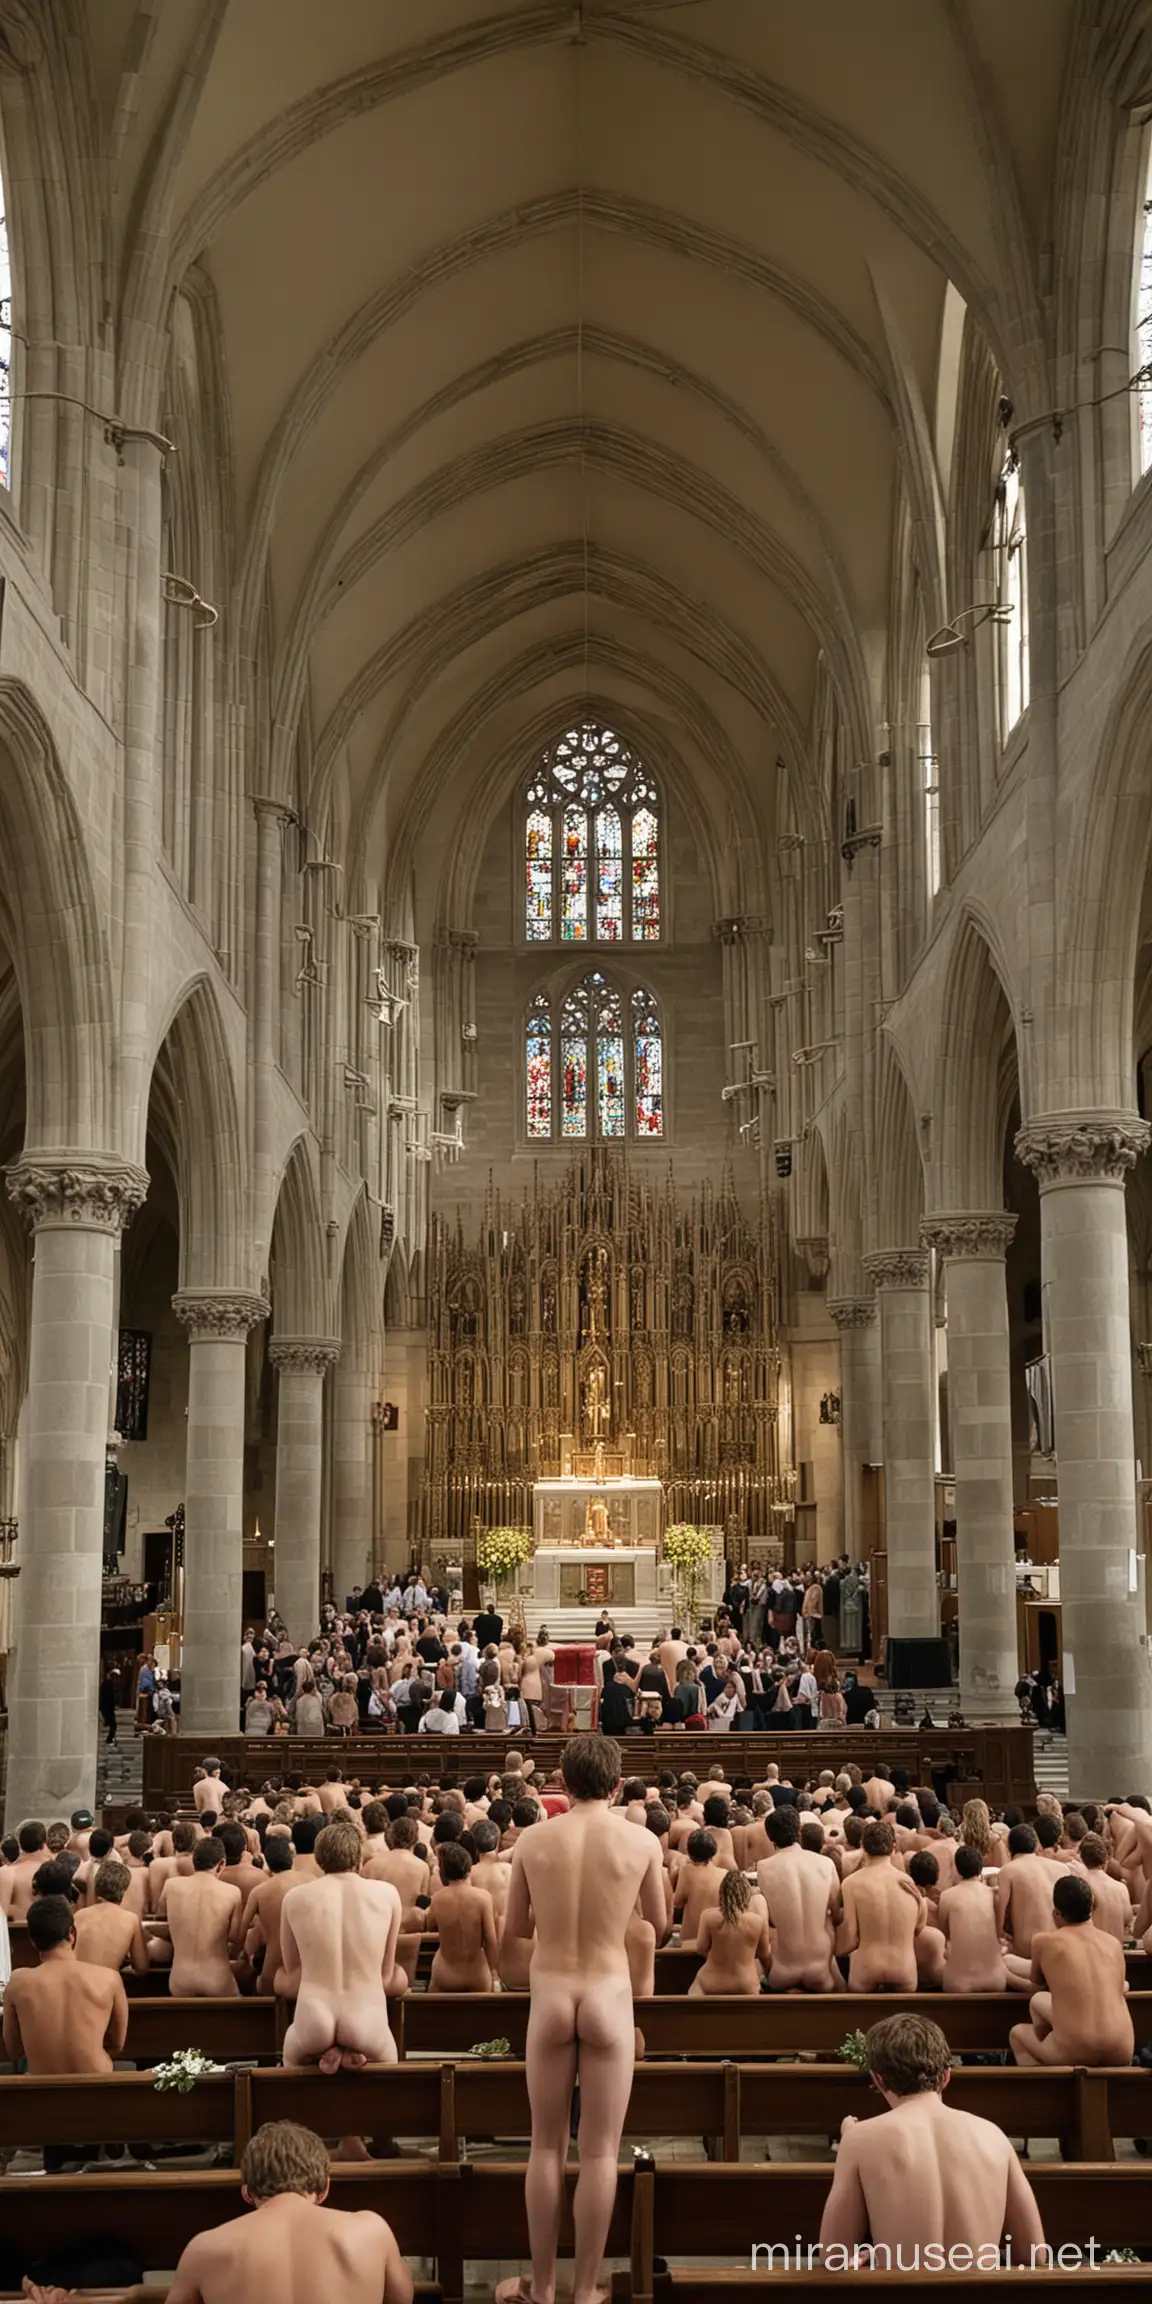 Jovens nus enchem uma igreja orando em pé, vistos desde o altar.